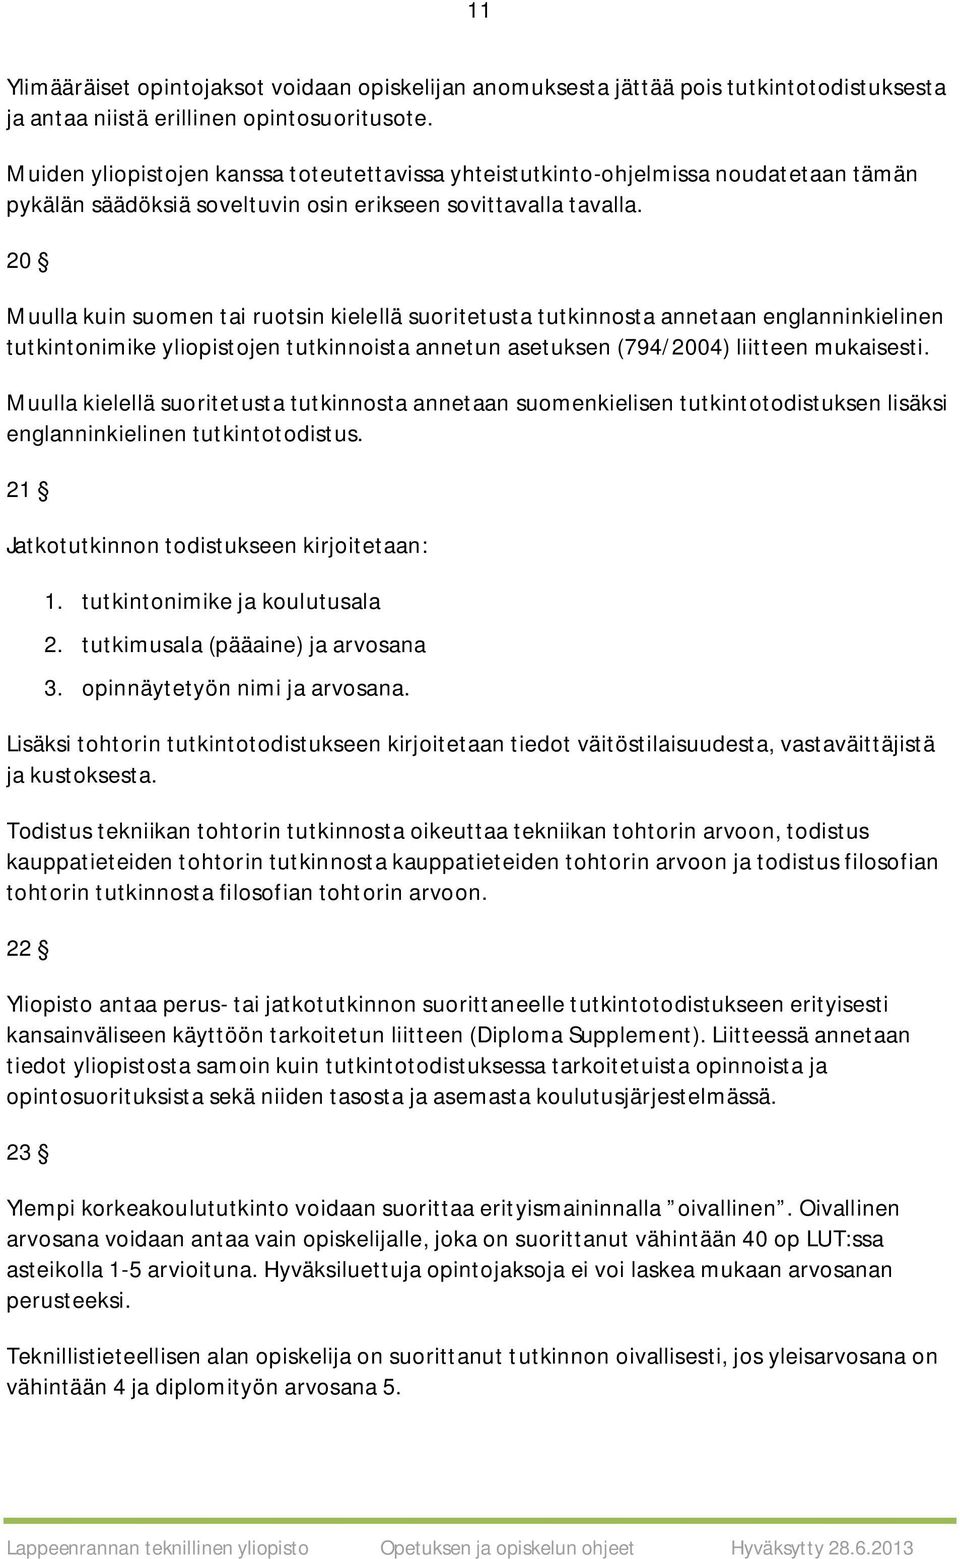 20 Muulla kuin suomen tai ruotsin kielellä suoritetusta tutkinnosta annetaan englanninkielinen tutkintonimike yliopistojen tutkinnoista annetun asetuksen (794/2004) liitteen mukaisesti.